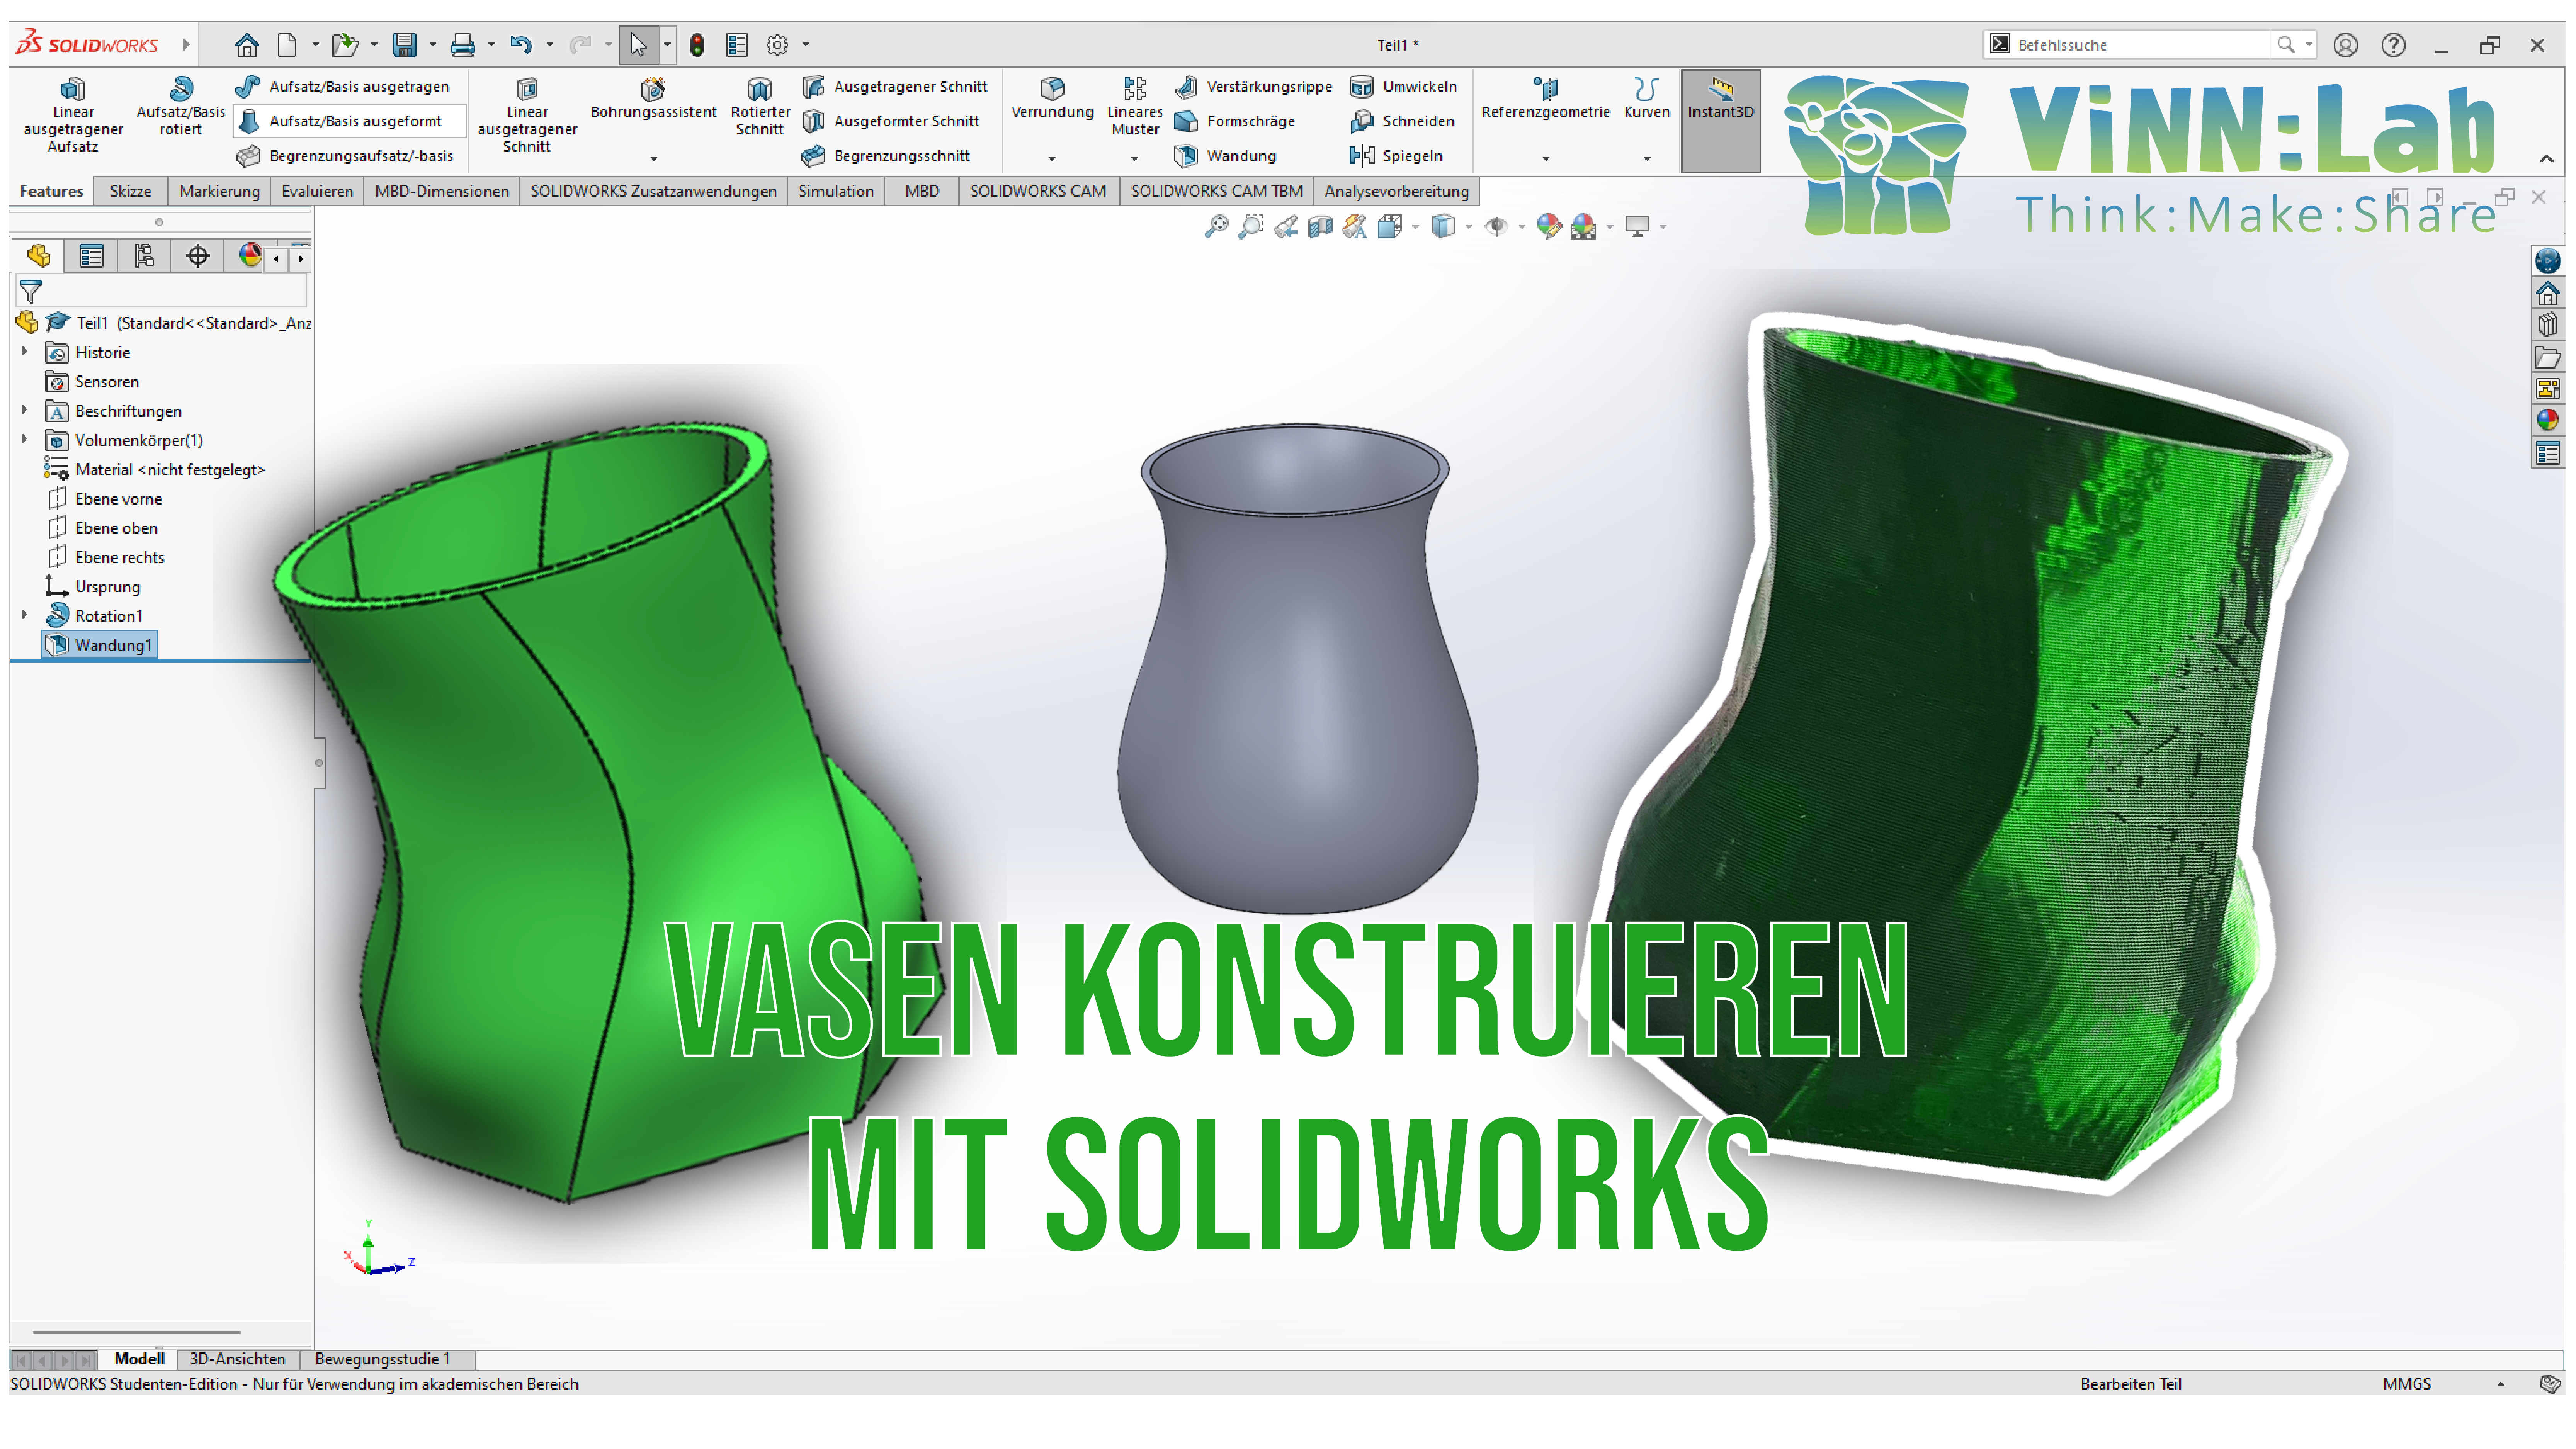 " Vasen konstruieren und drucken " - Workshop vor Ort